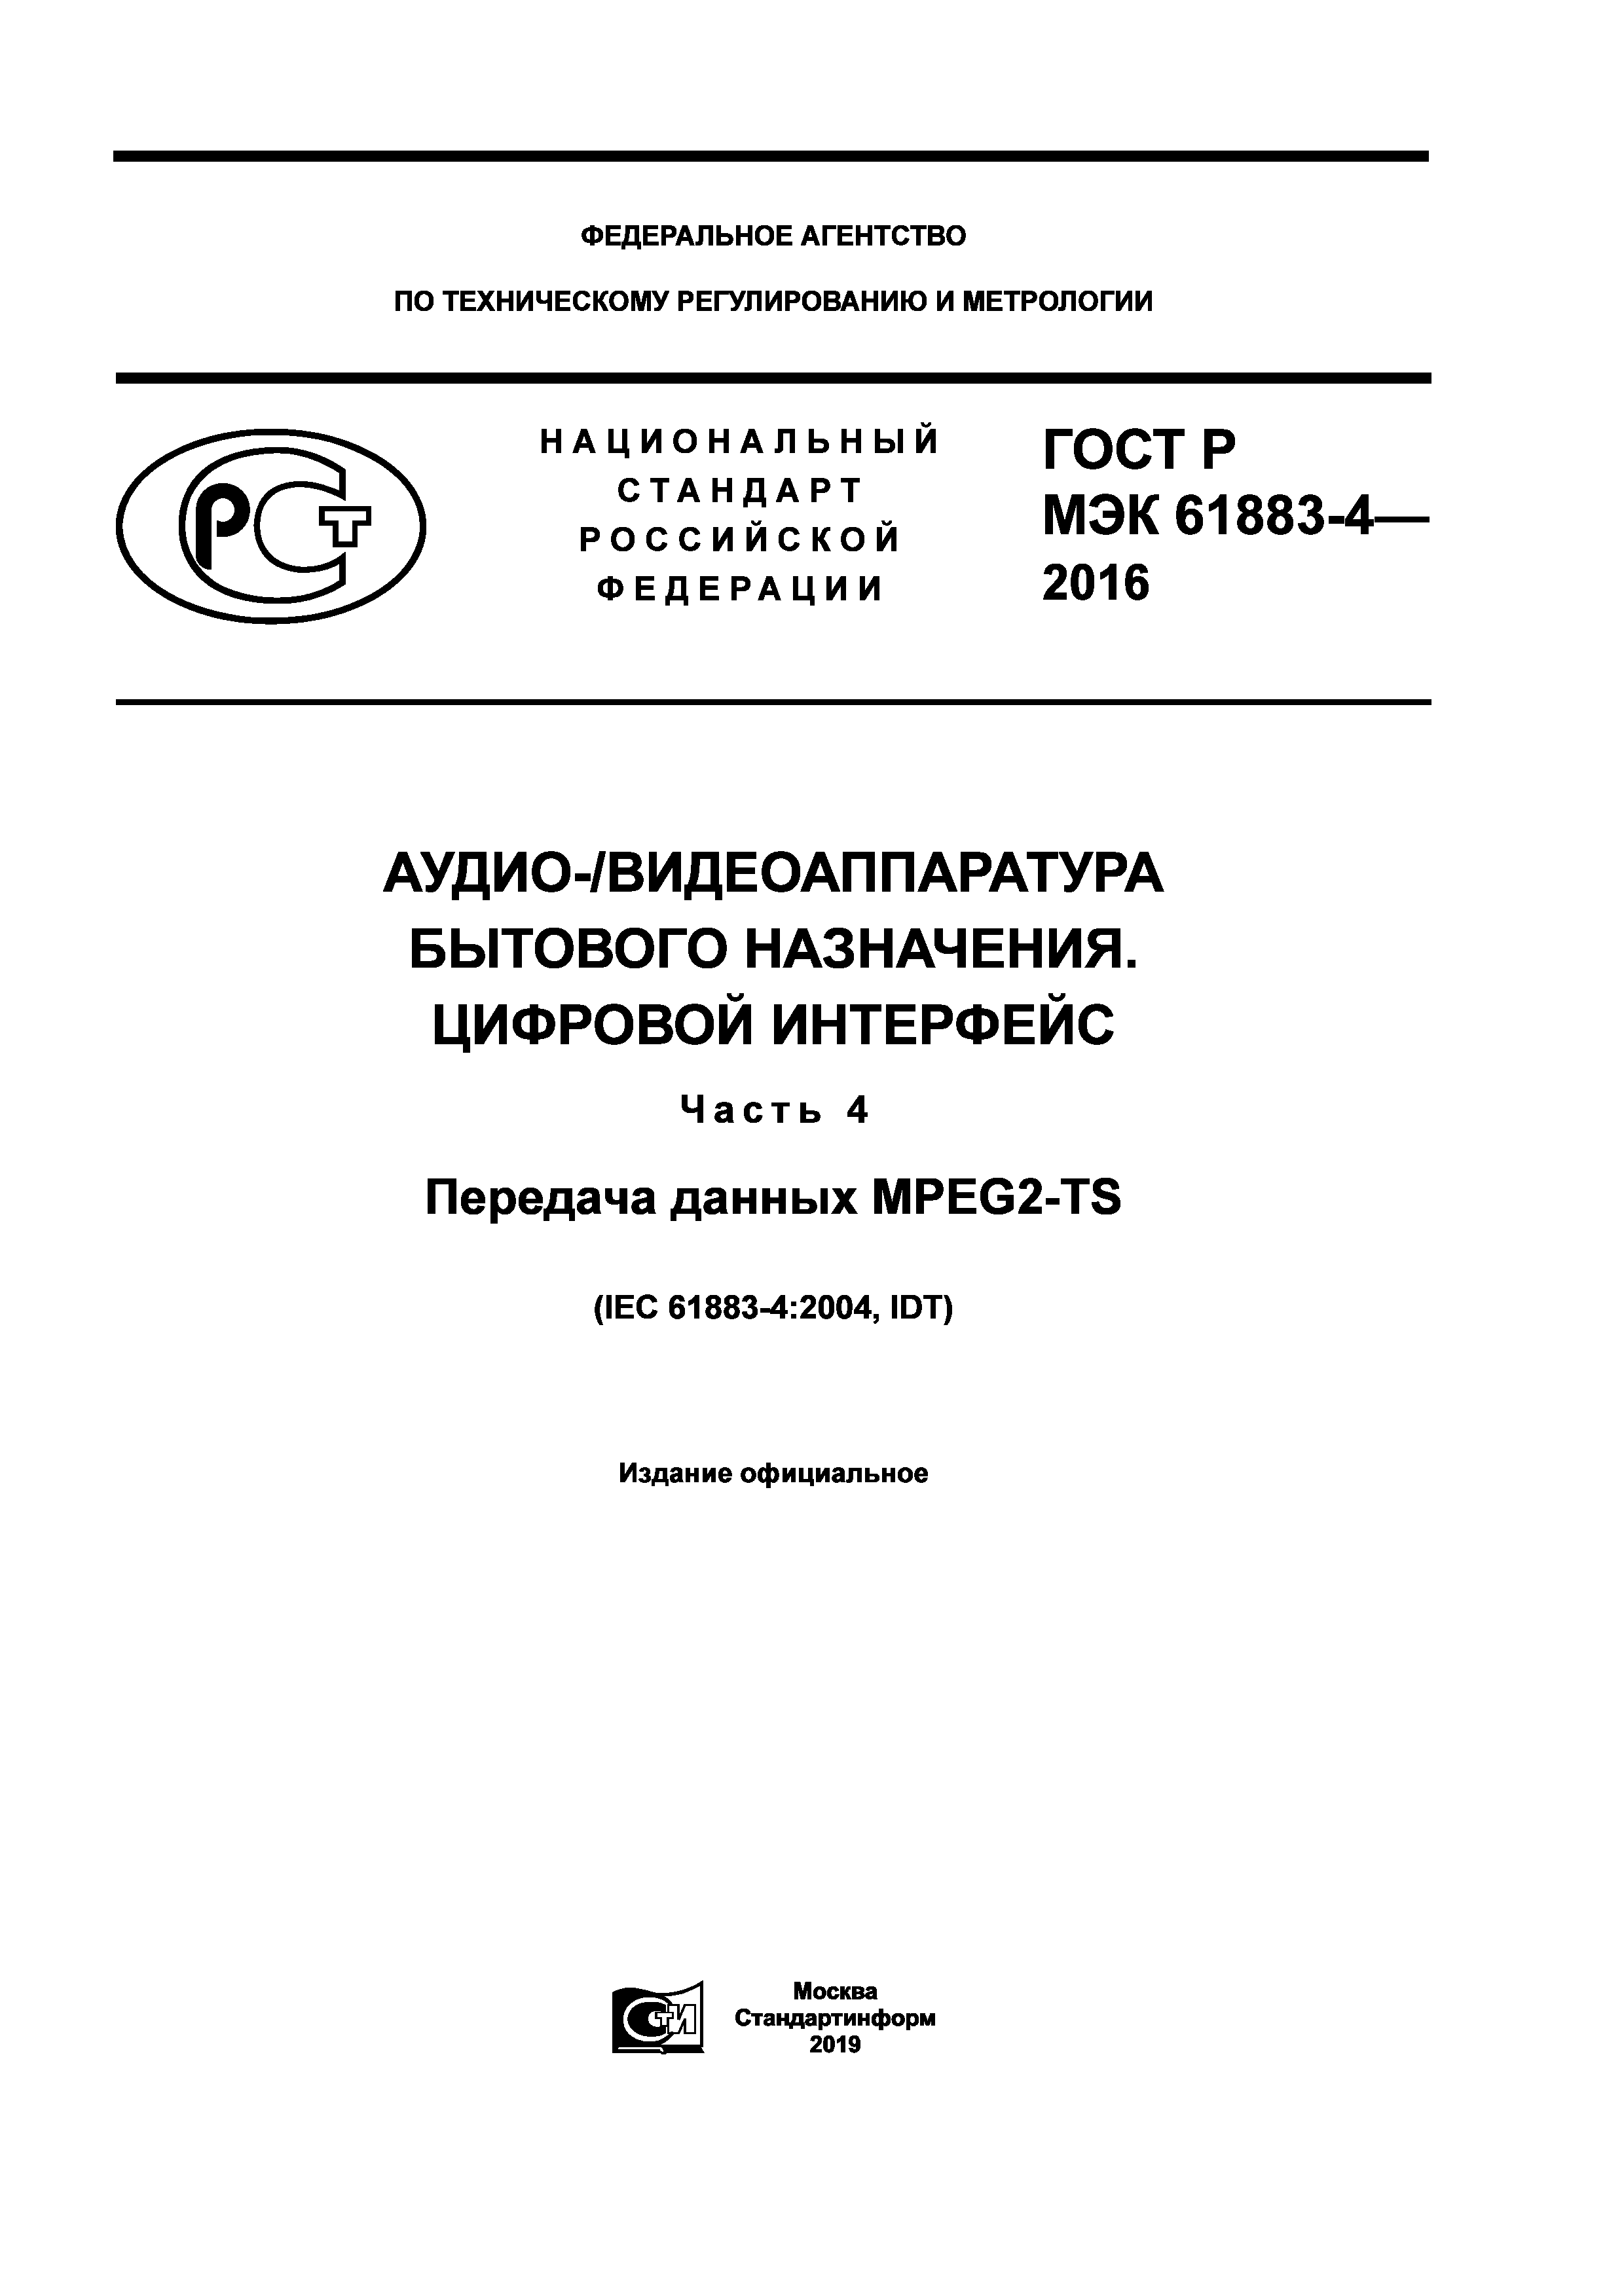 ГОСТ Р МЭК 61883-4-2016